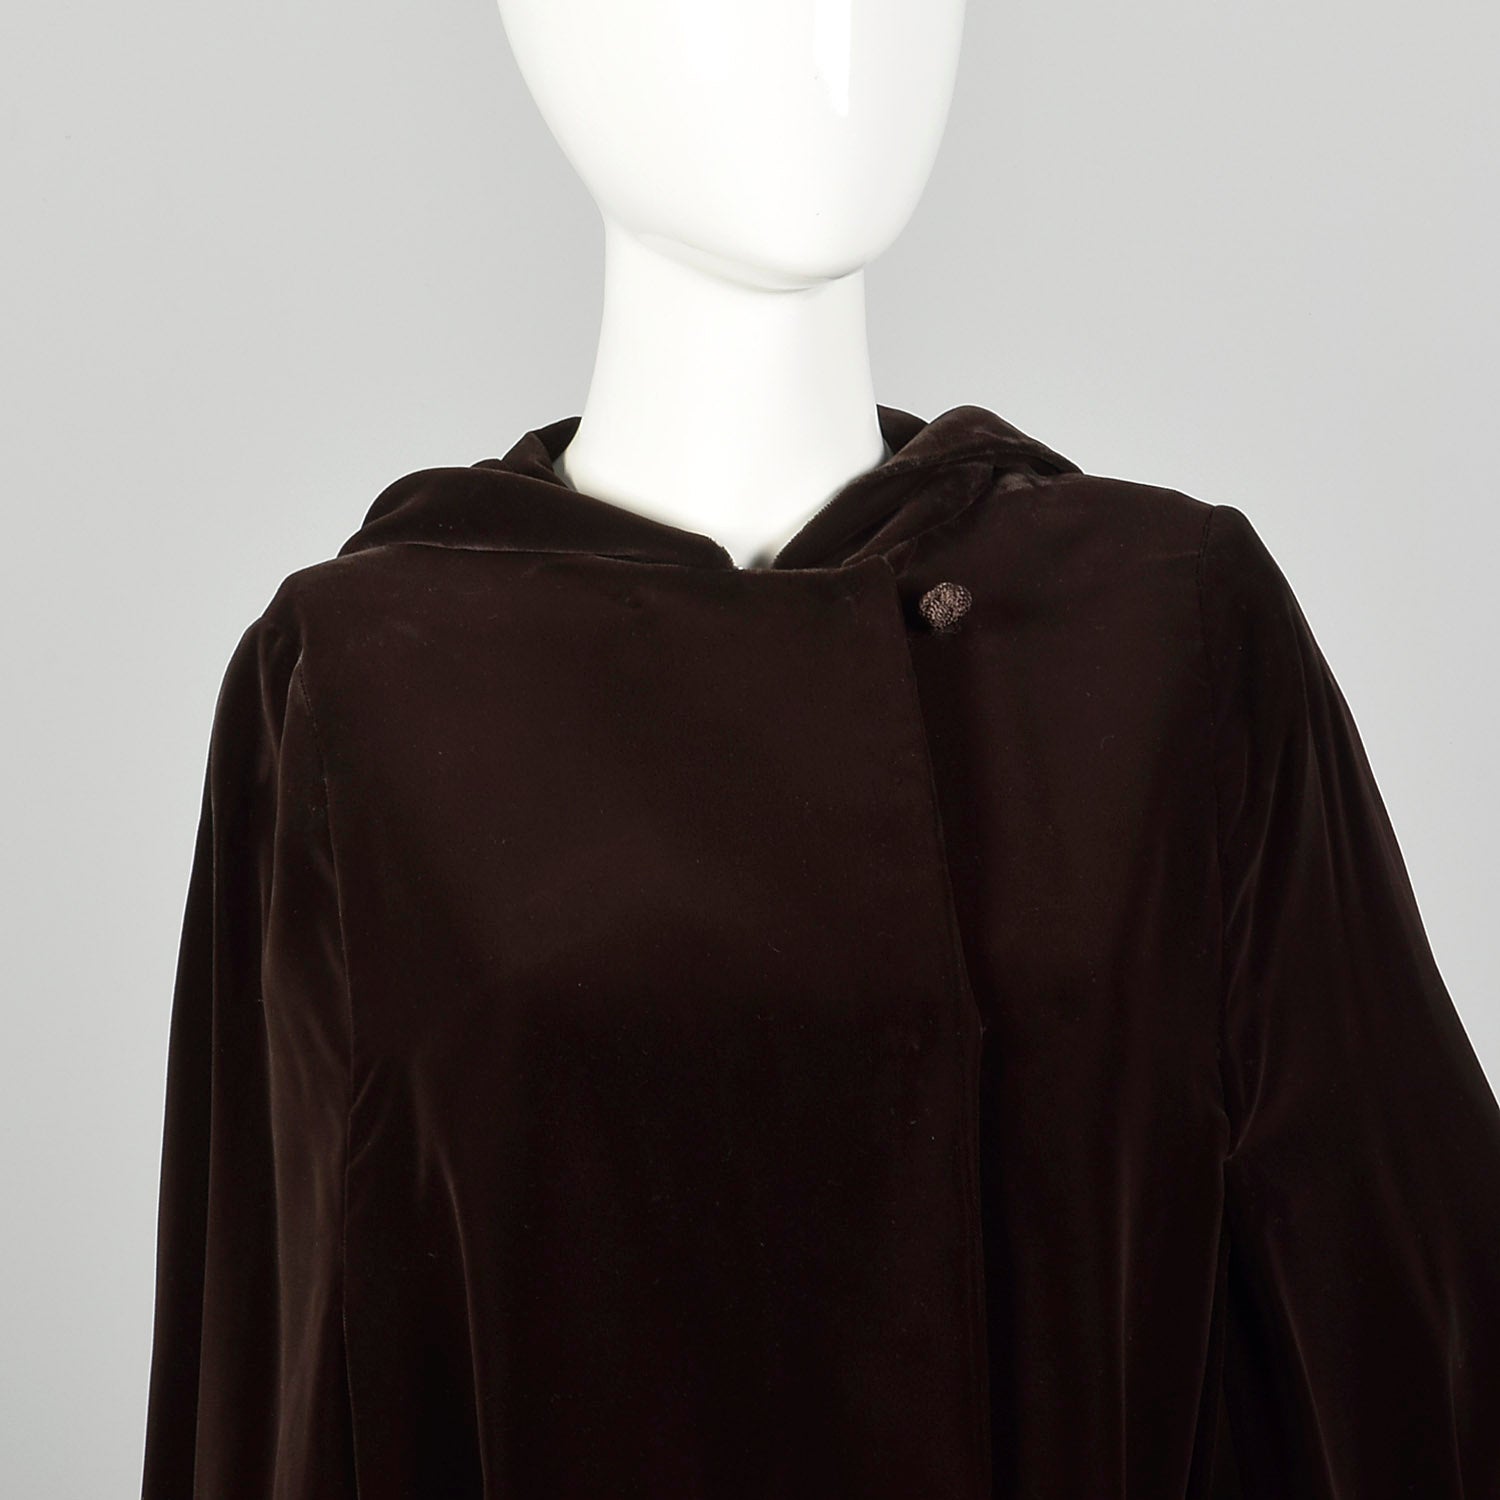 Medium 1970s Cape Brown Velvet Hooded Cloak Winter Autumn